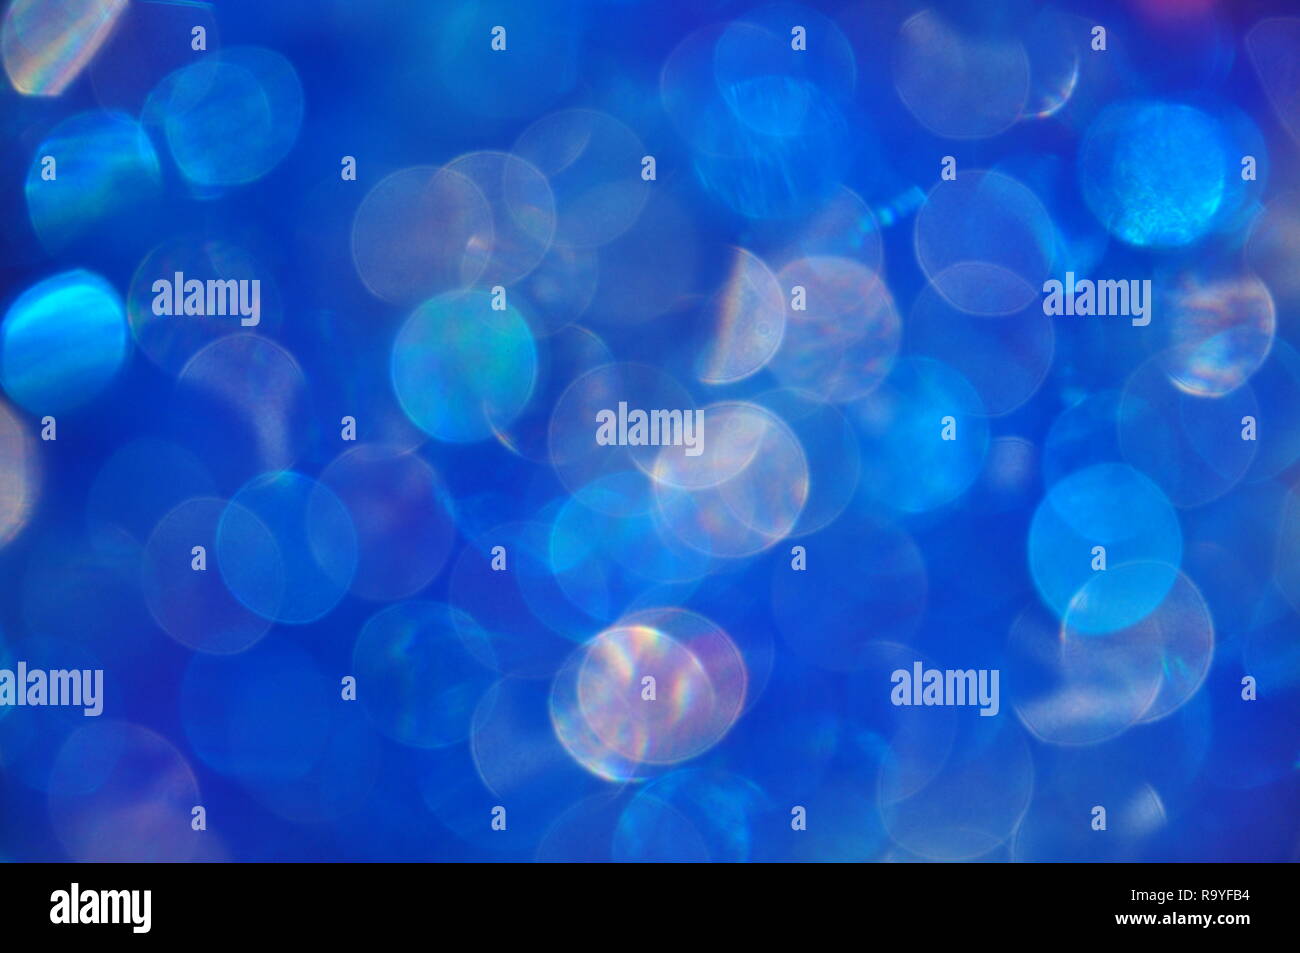 Abstract sfocato sfondo blu con cerchi colorati galleggiante nella notte Foto Stock